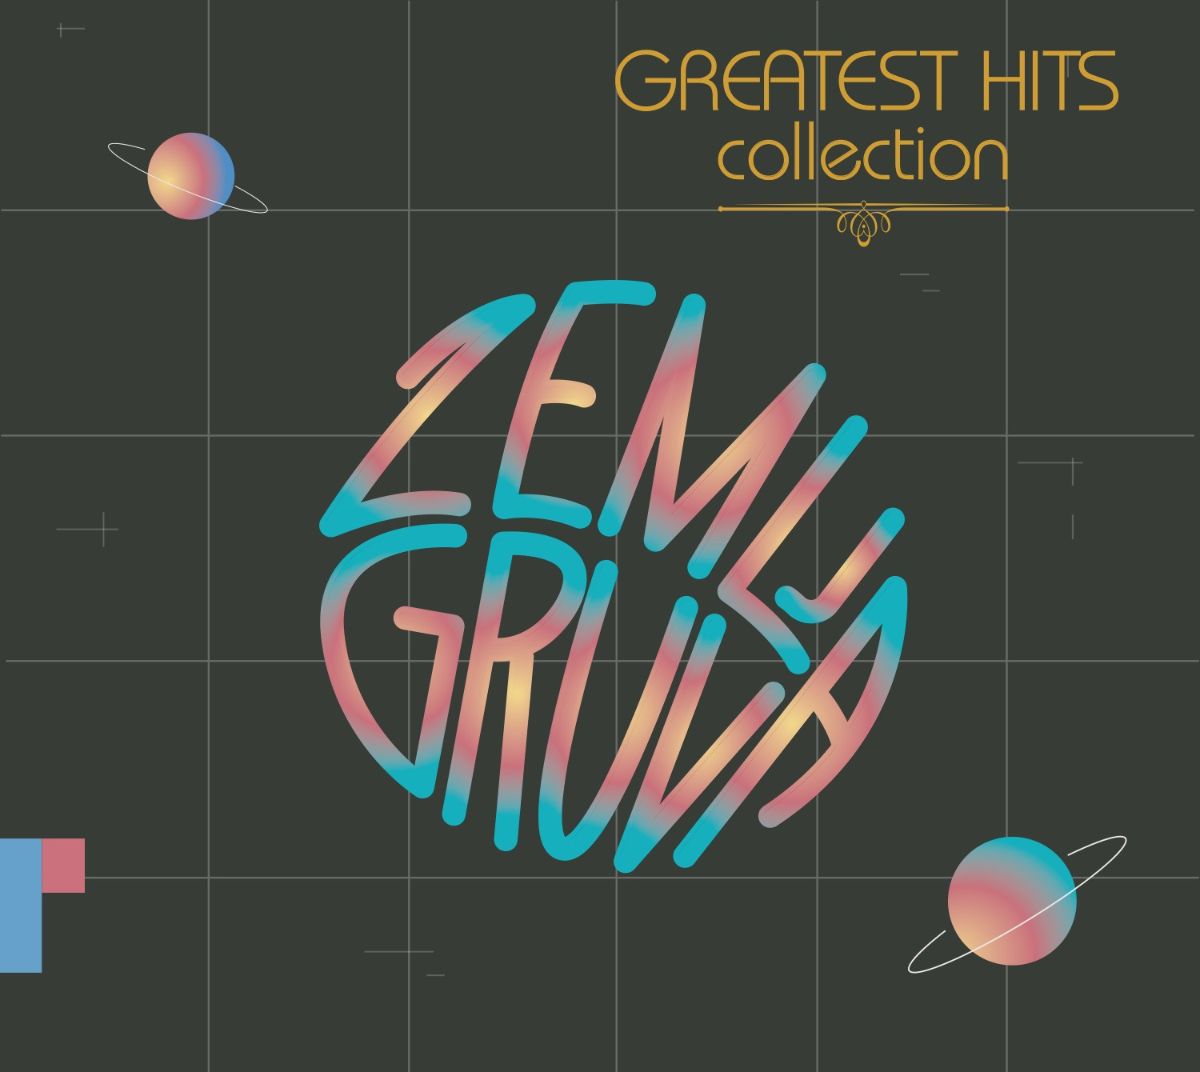 U prodaji je “Greatest Hits Collection” Zemlje gruva